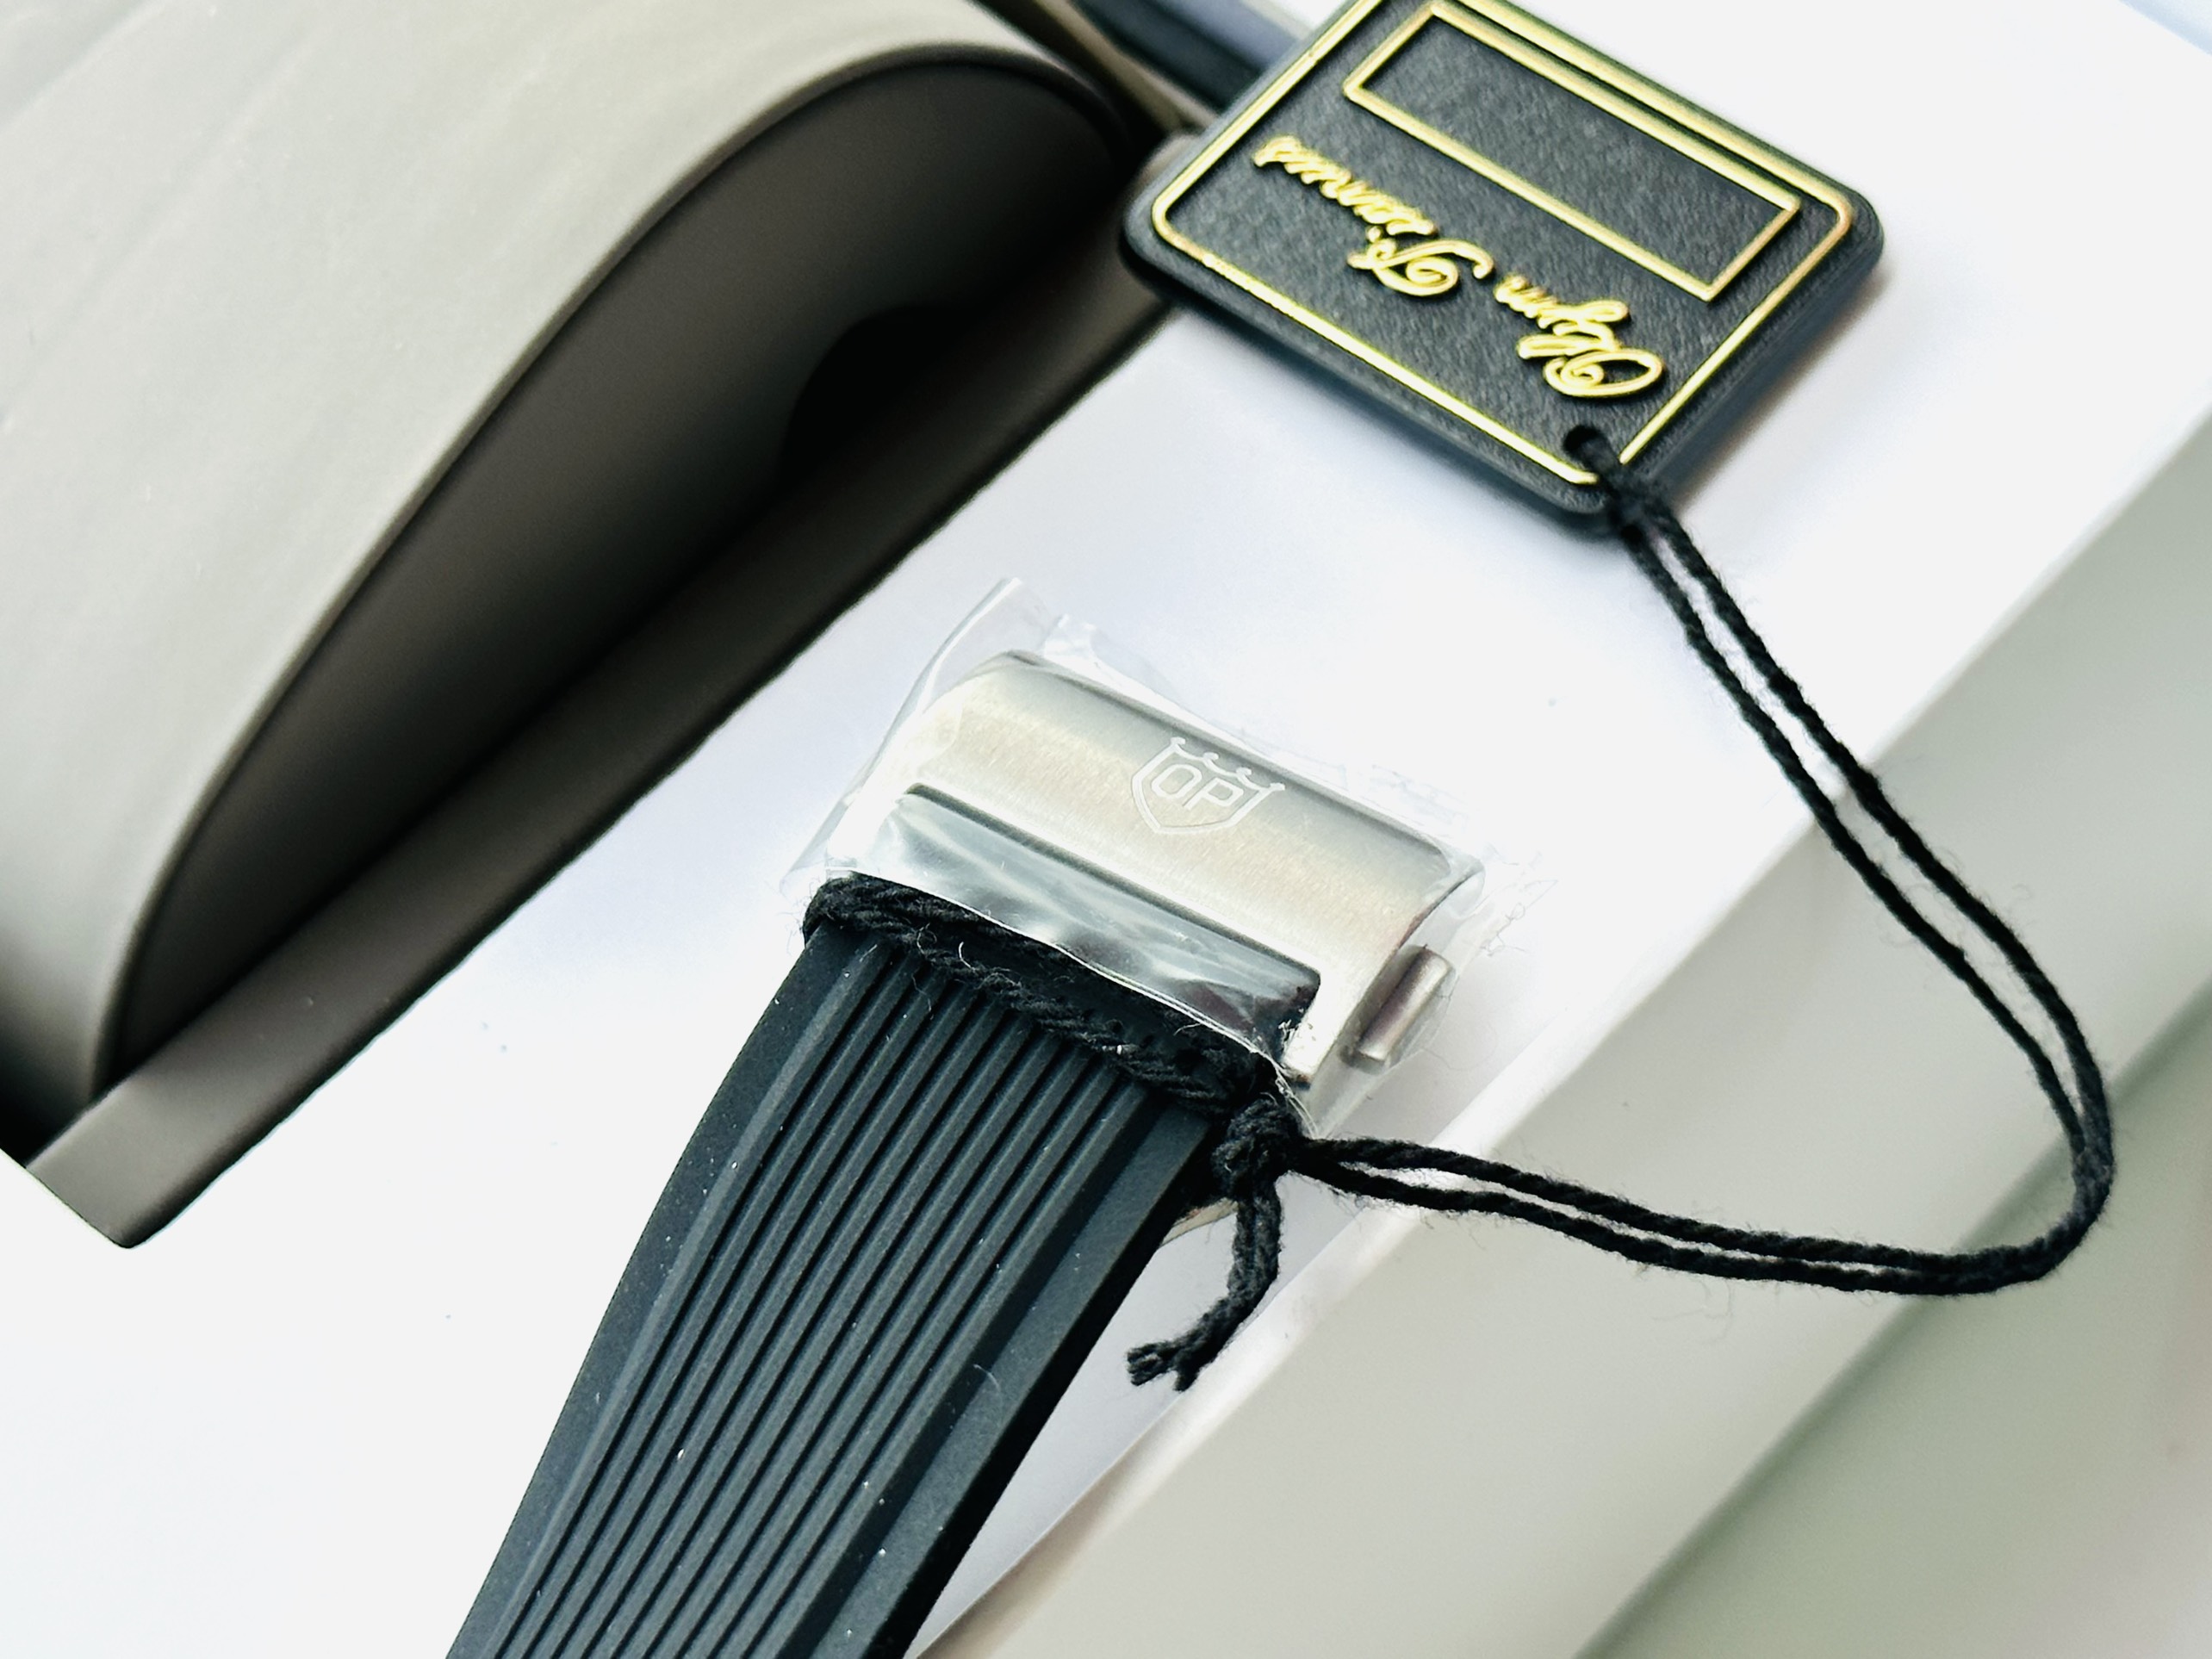 Đồng hồ Olym Pianus OP990-45 - Sự tinh tế và đẳng cấp trong một thiết kế độc đáo